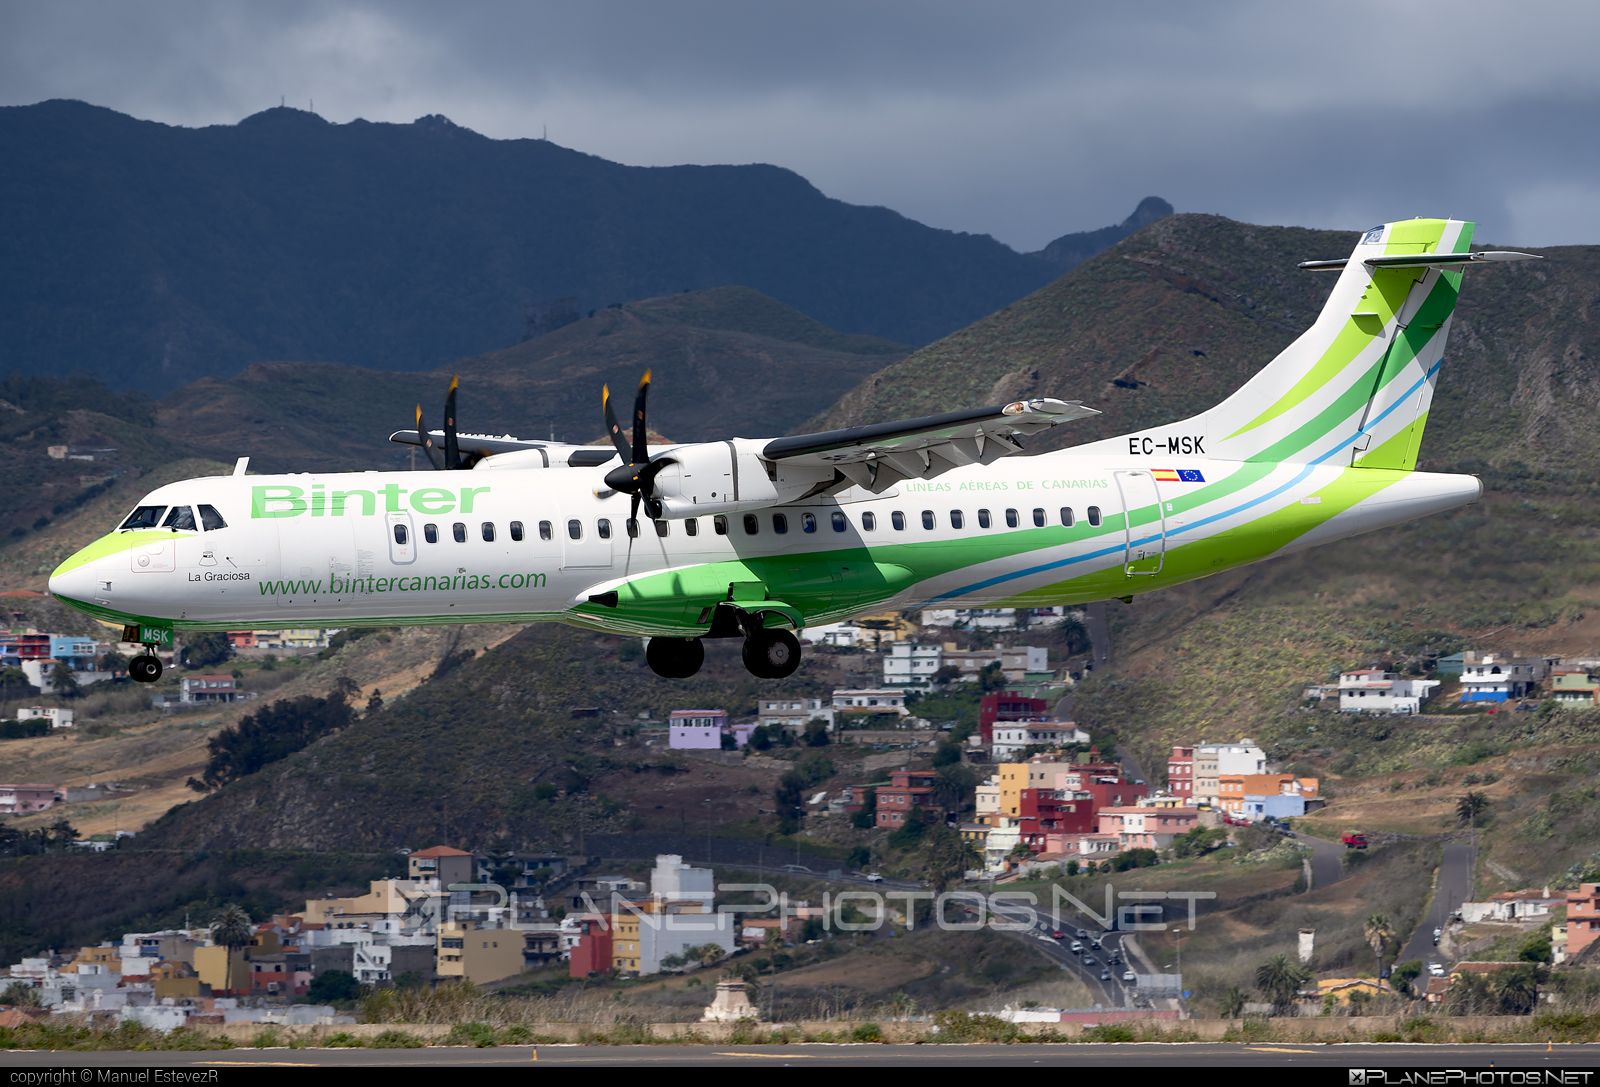 ATR 72-600 - EC-MSK operated by Binter Canarias #BinterCanarias #atr #atr72 #atr72600